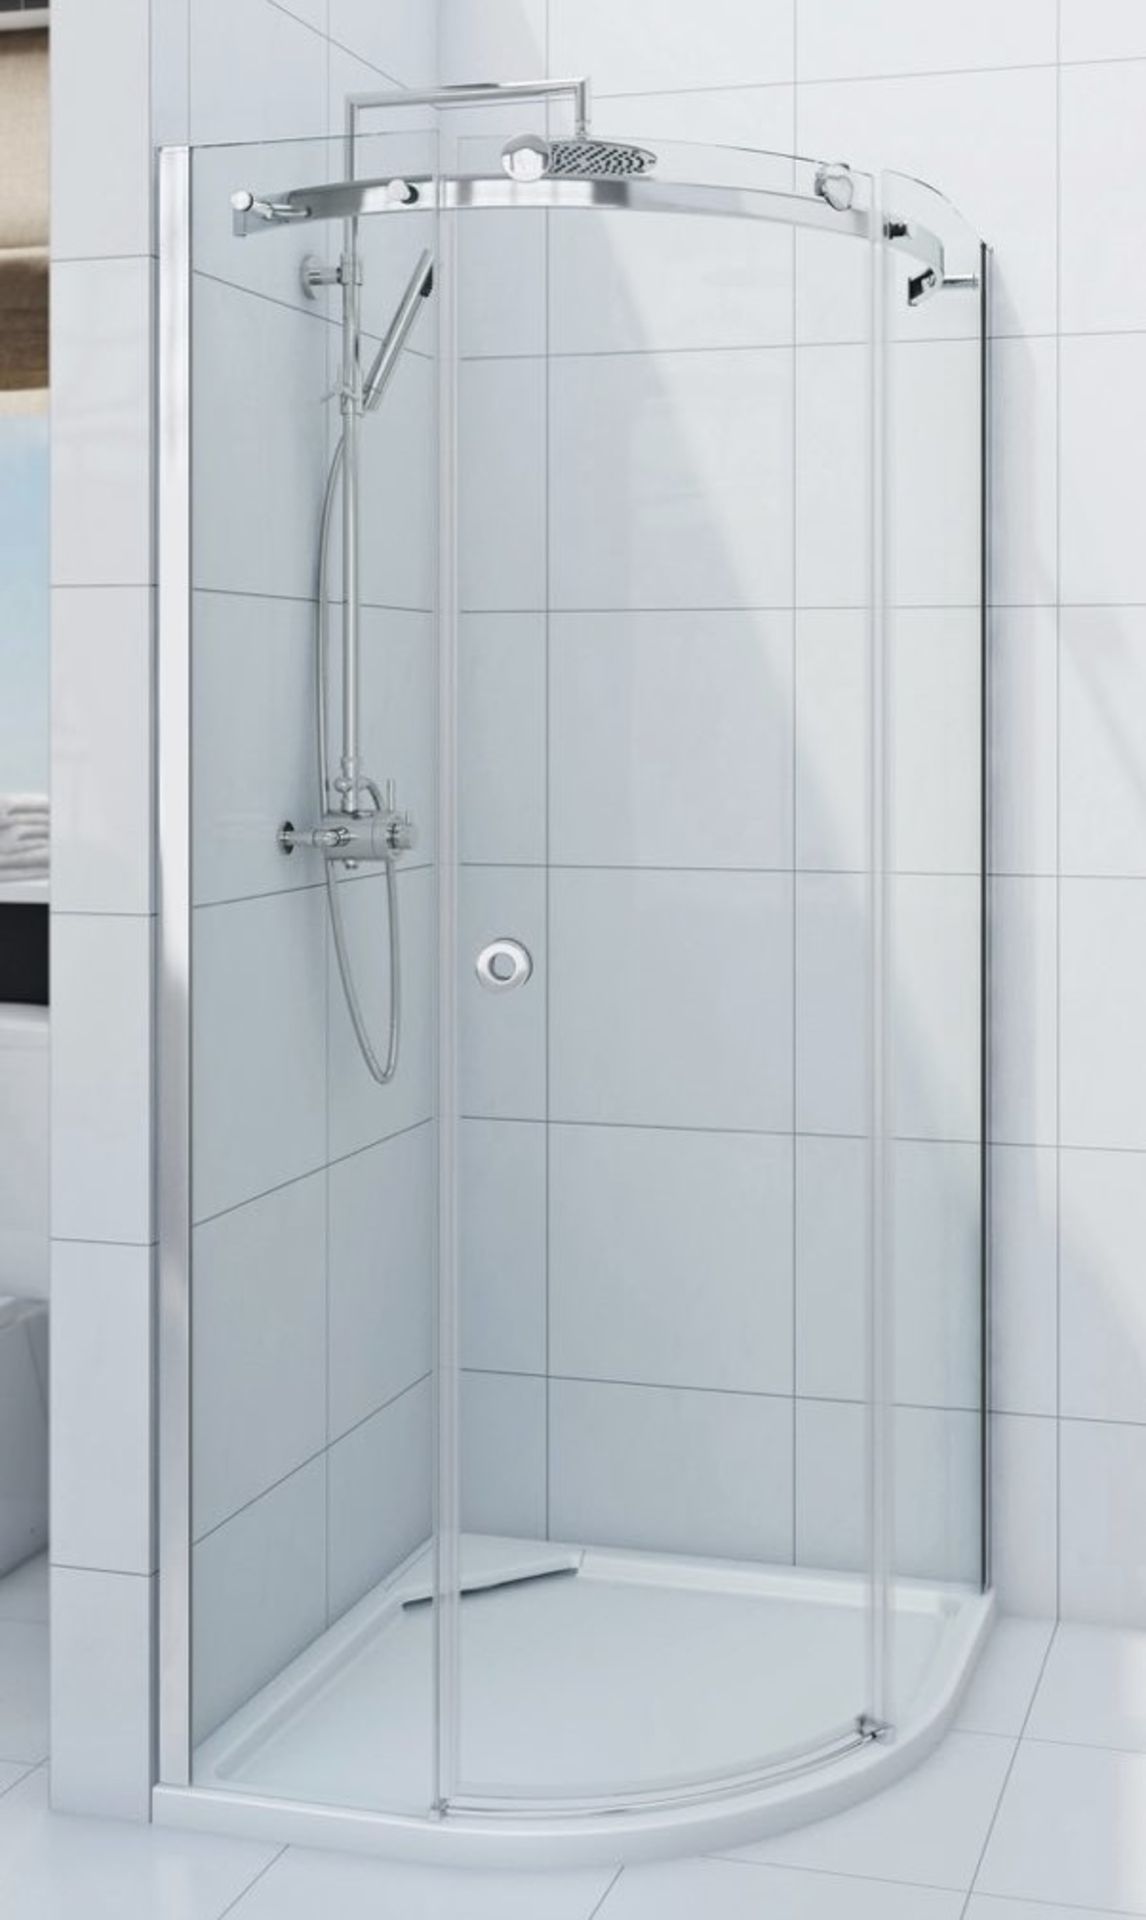 1 x Infiniti 800mm Quadrant Shower Enclosure - 800x800mm - Unused Stock - CL190 - Ref BR111 -